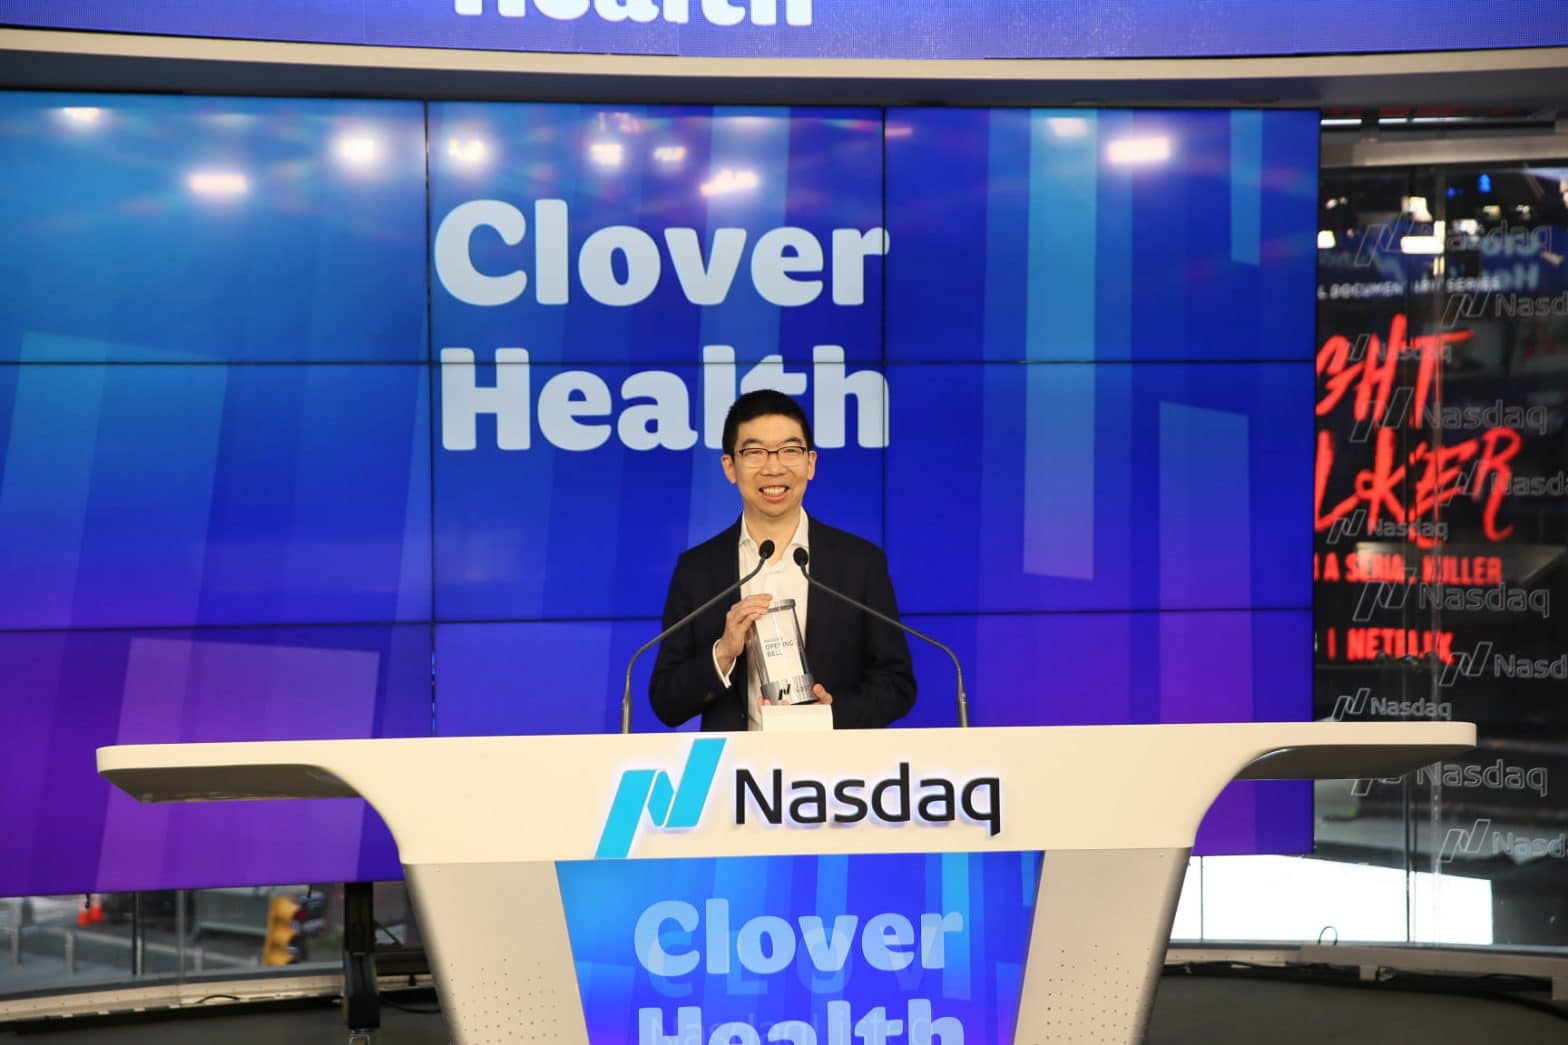 clover health clov stock